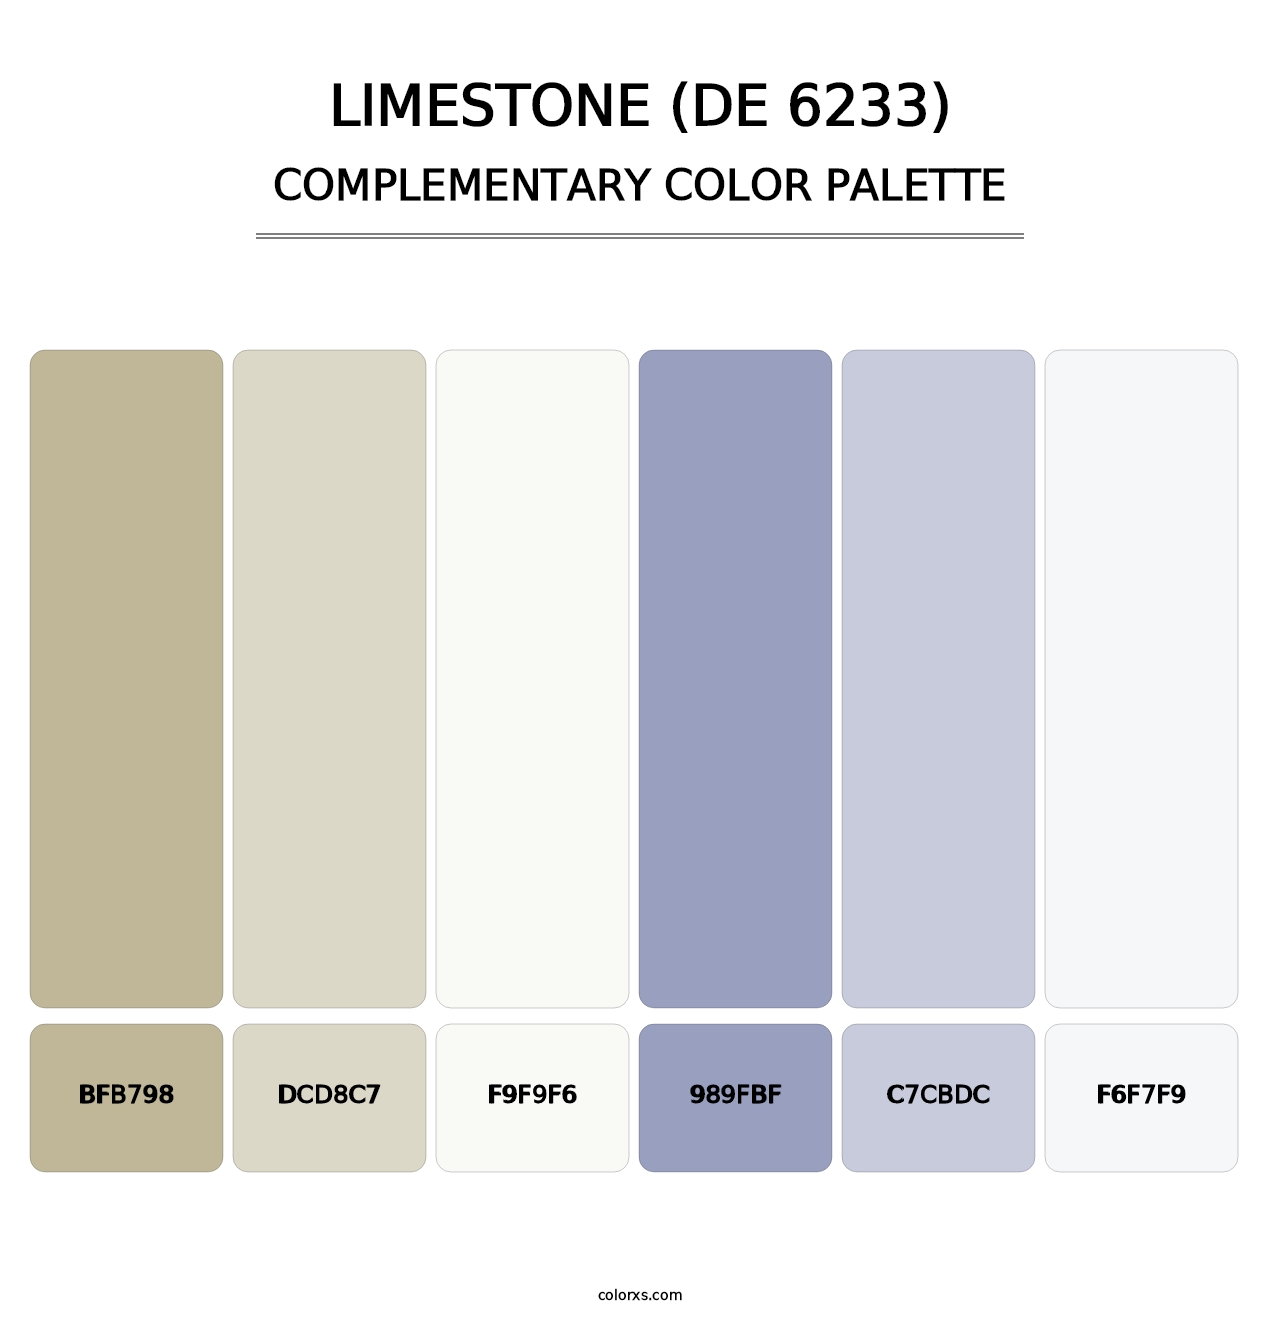 Limestone (DE 6233) - Complementary Color Palette